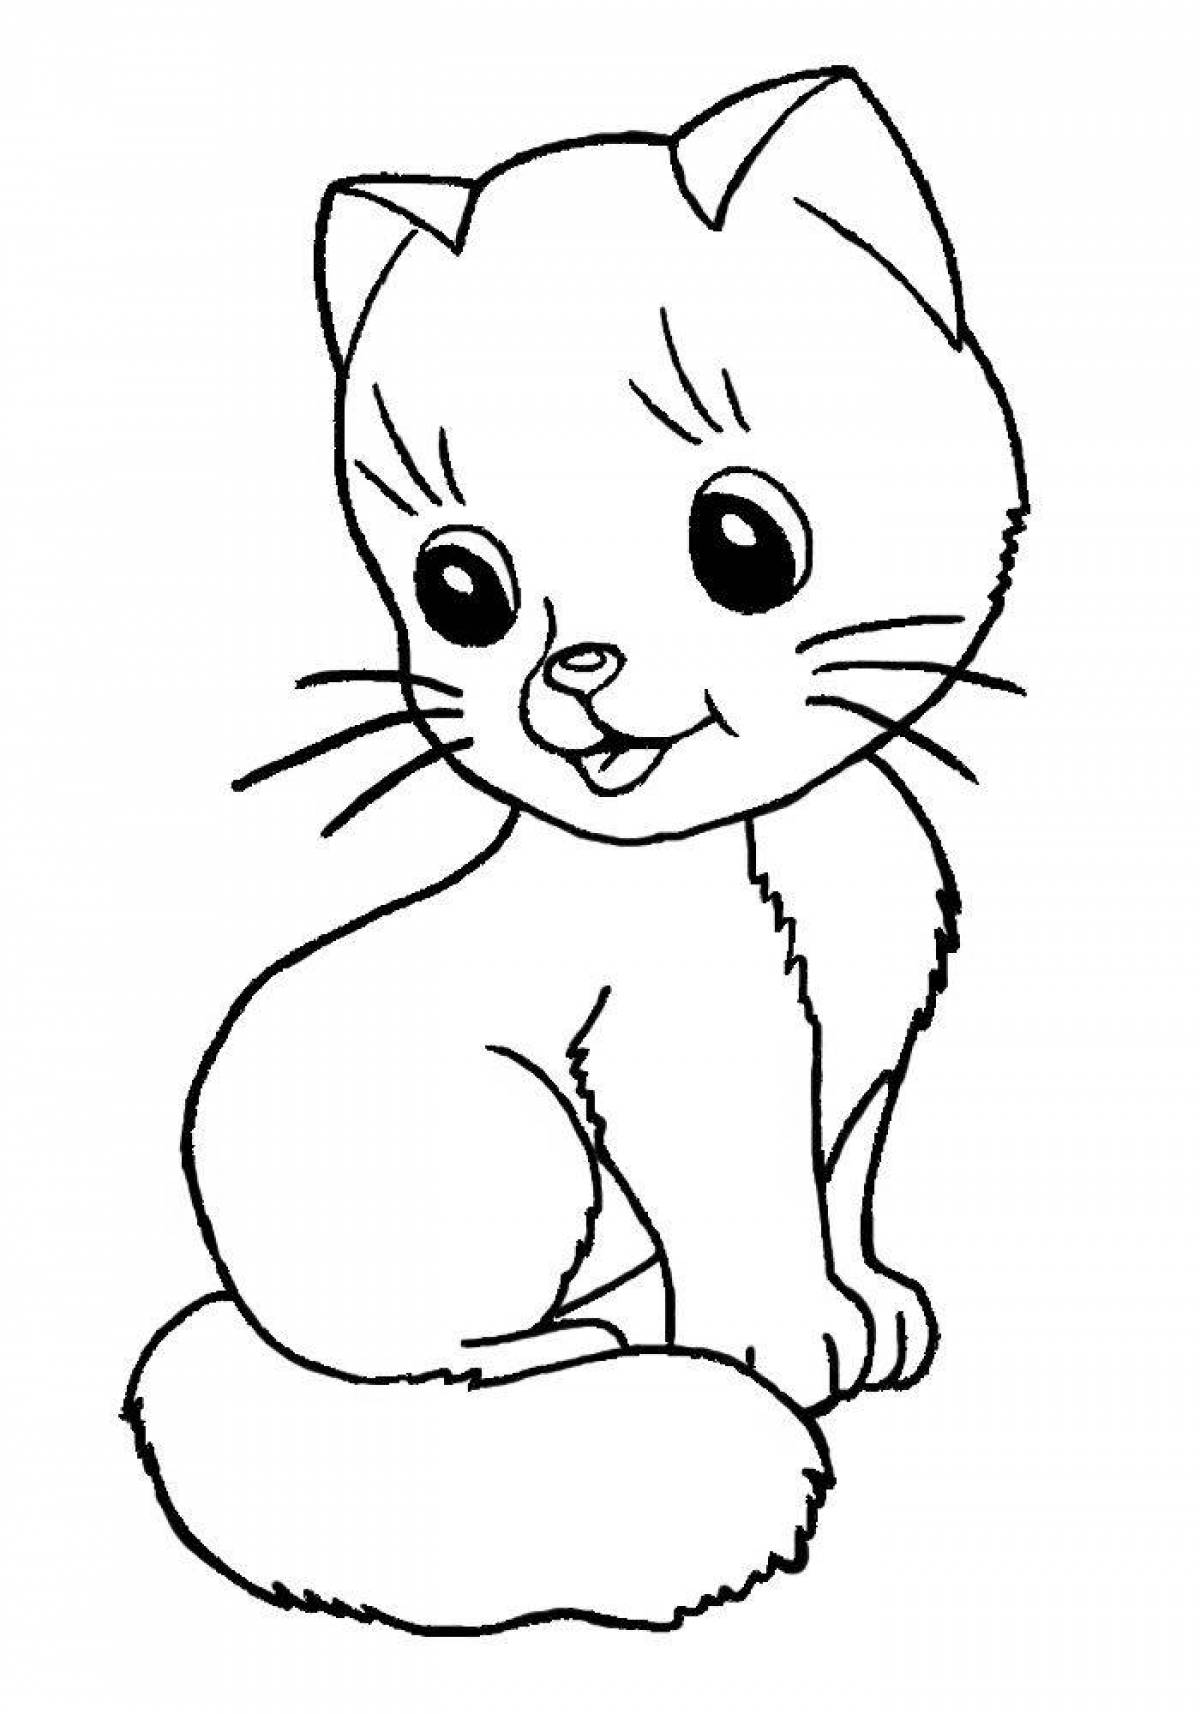 Раскраска котенок для детей 4 5 лет. Котенок. Раскраска. Котенок для раскрашивания детям. Кошка раскраска для детей. Раскраска малышам животные.